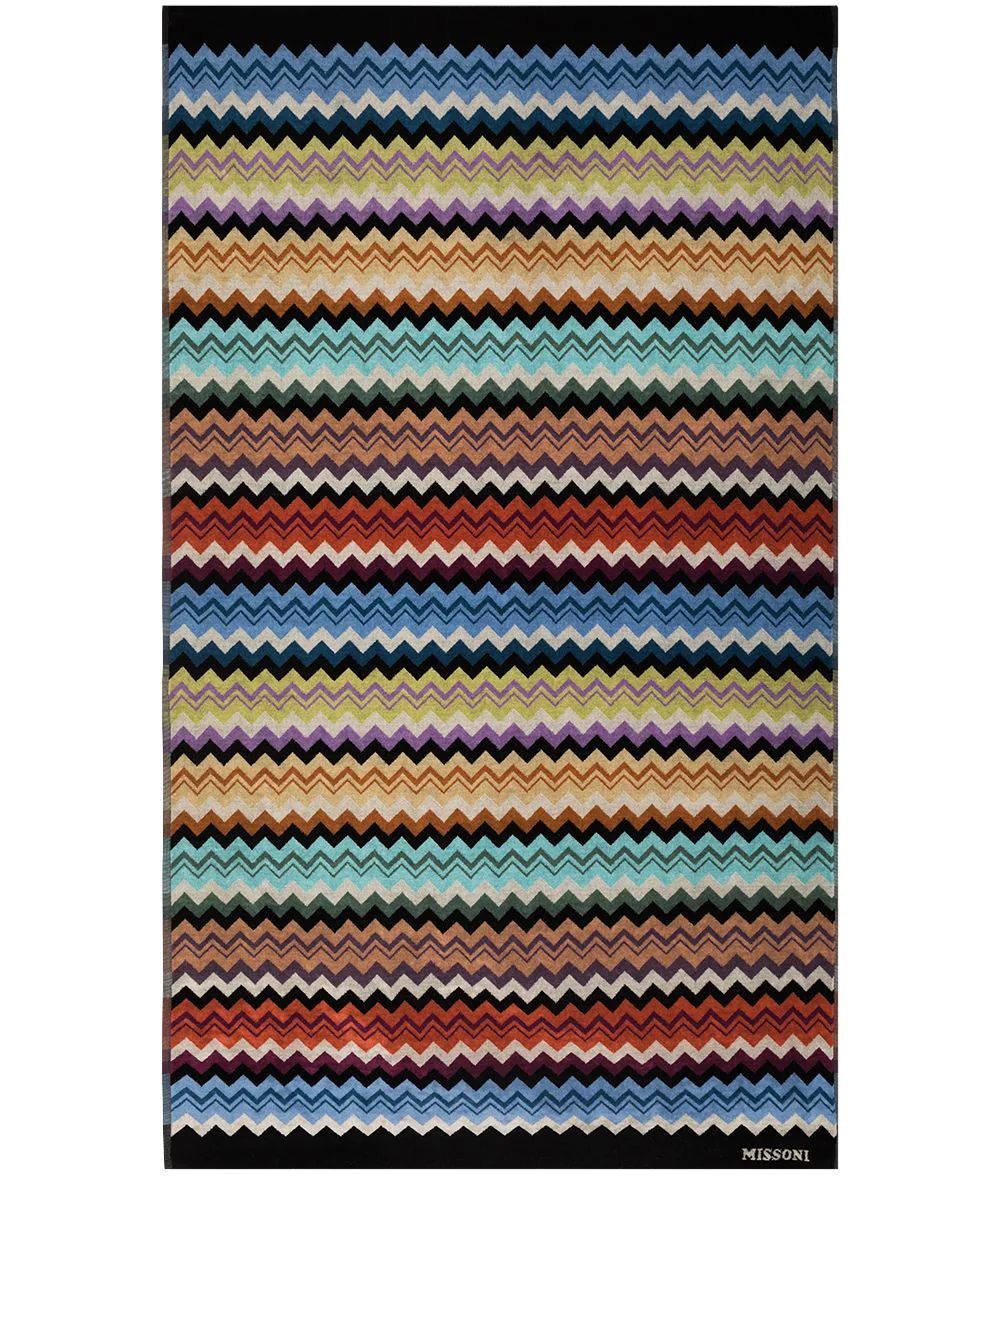 Missoni Home Adam Beach Towel 100cm x 180cm - Farfetch | Farfetch Global